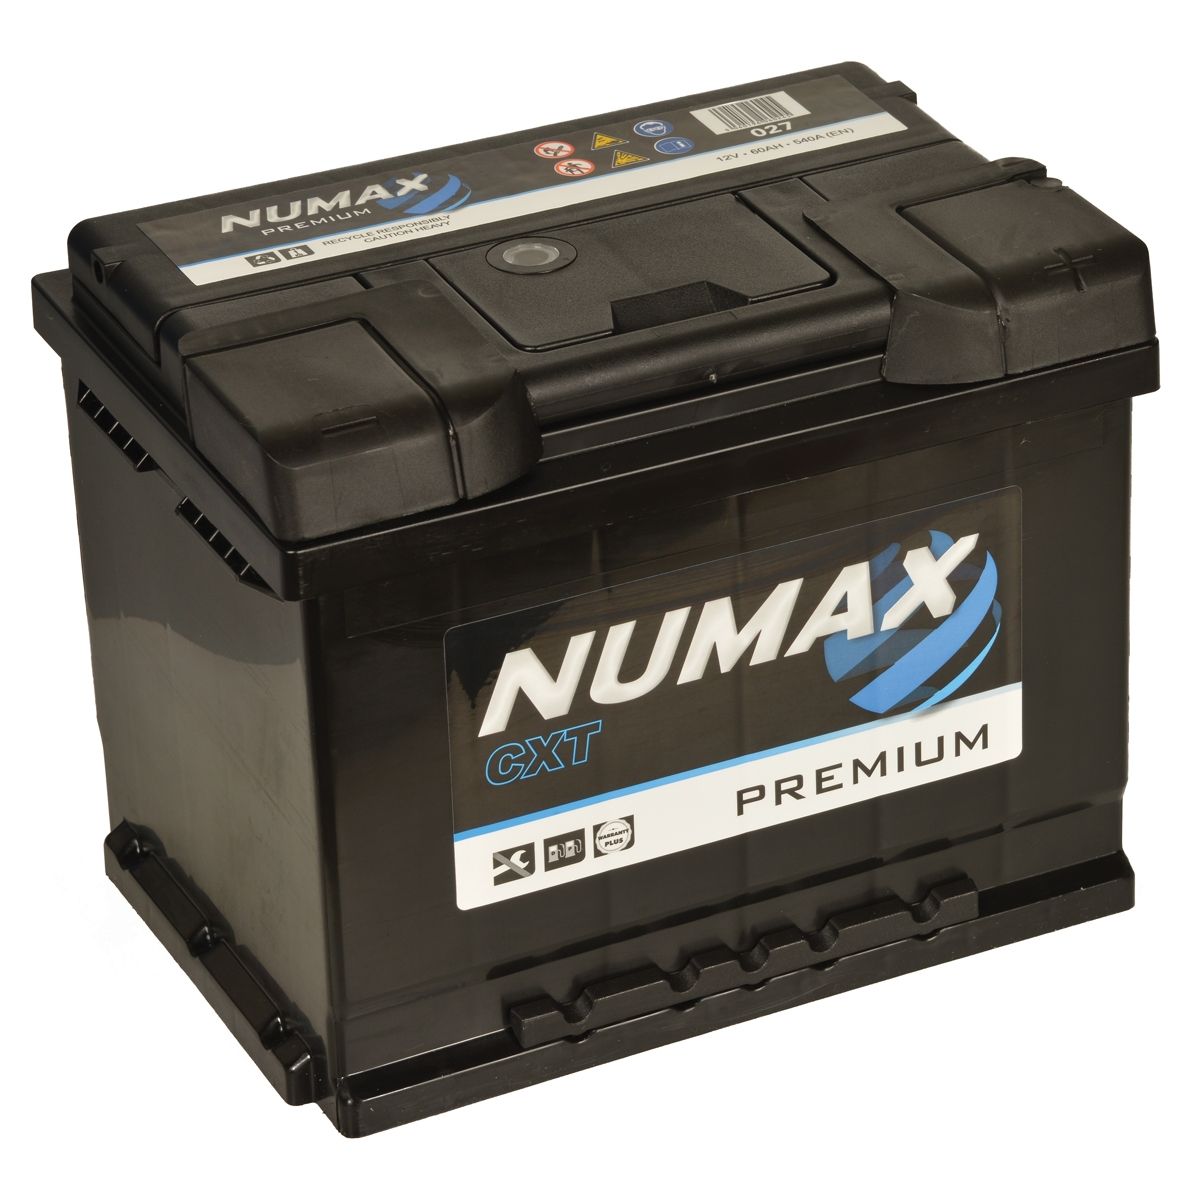 https://images.tayna.com/prod-images/1200/numaxcar/Numax-Premium-CXT-027.jpg